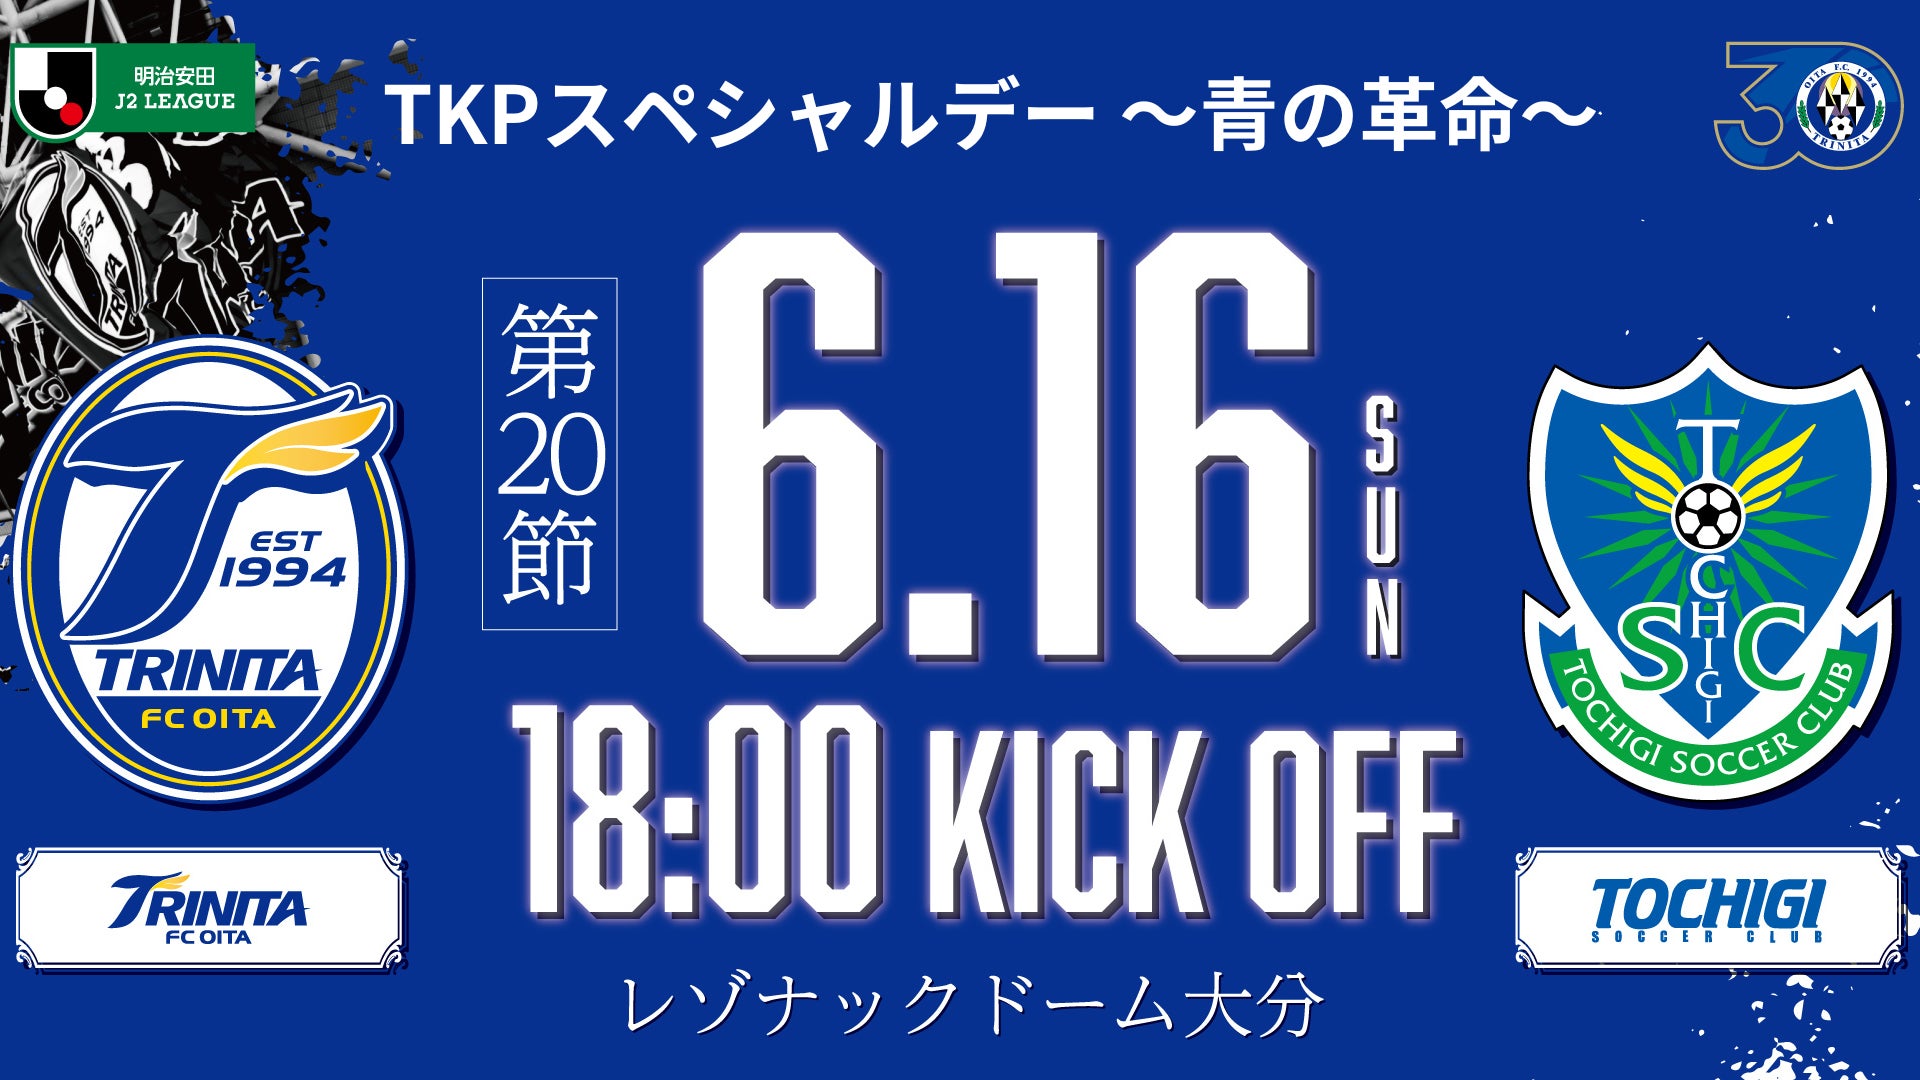 TKP、6月16日 レゾナックドーム大分にて「TKPスペシャルデー」を開催！大分トリニータ vs 栃木SC